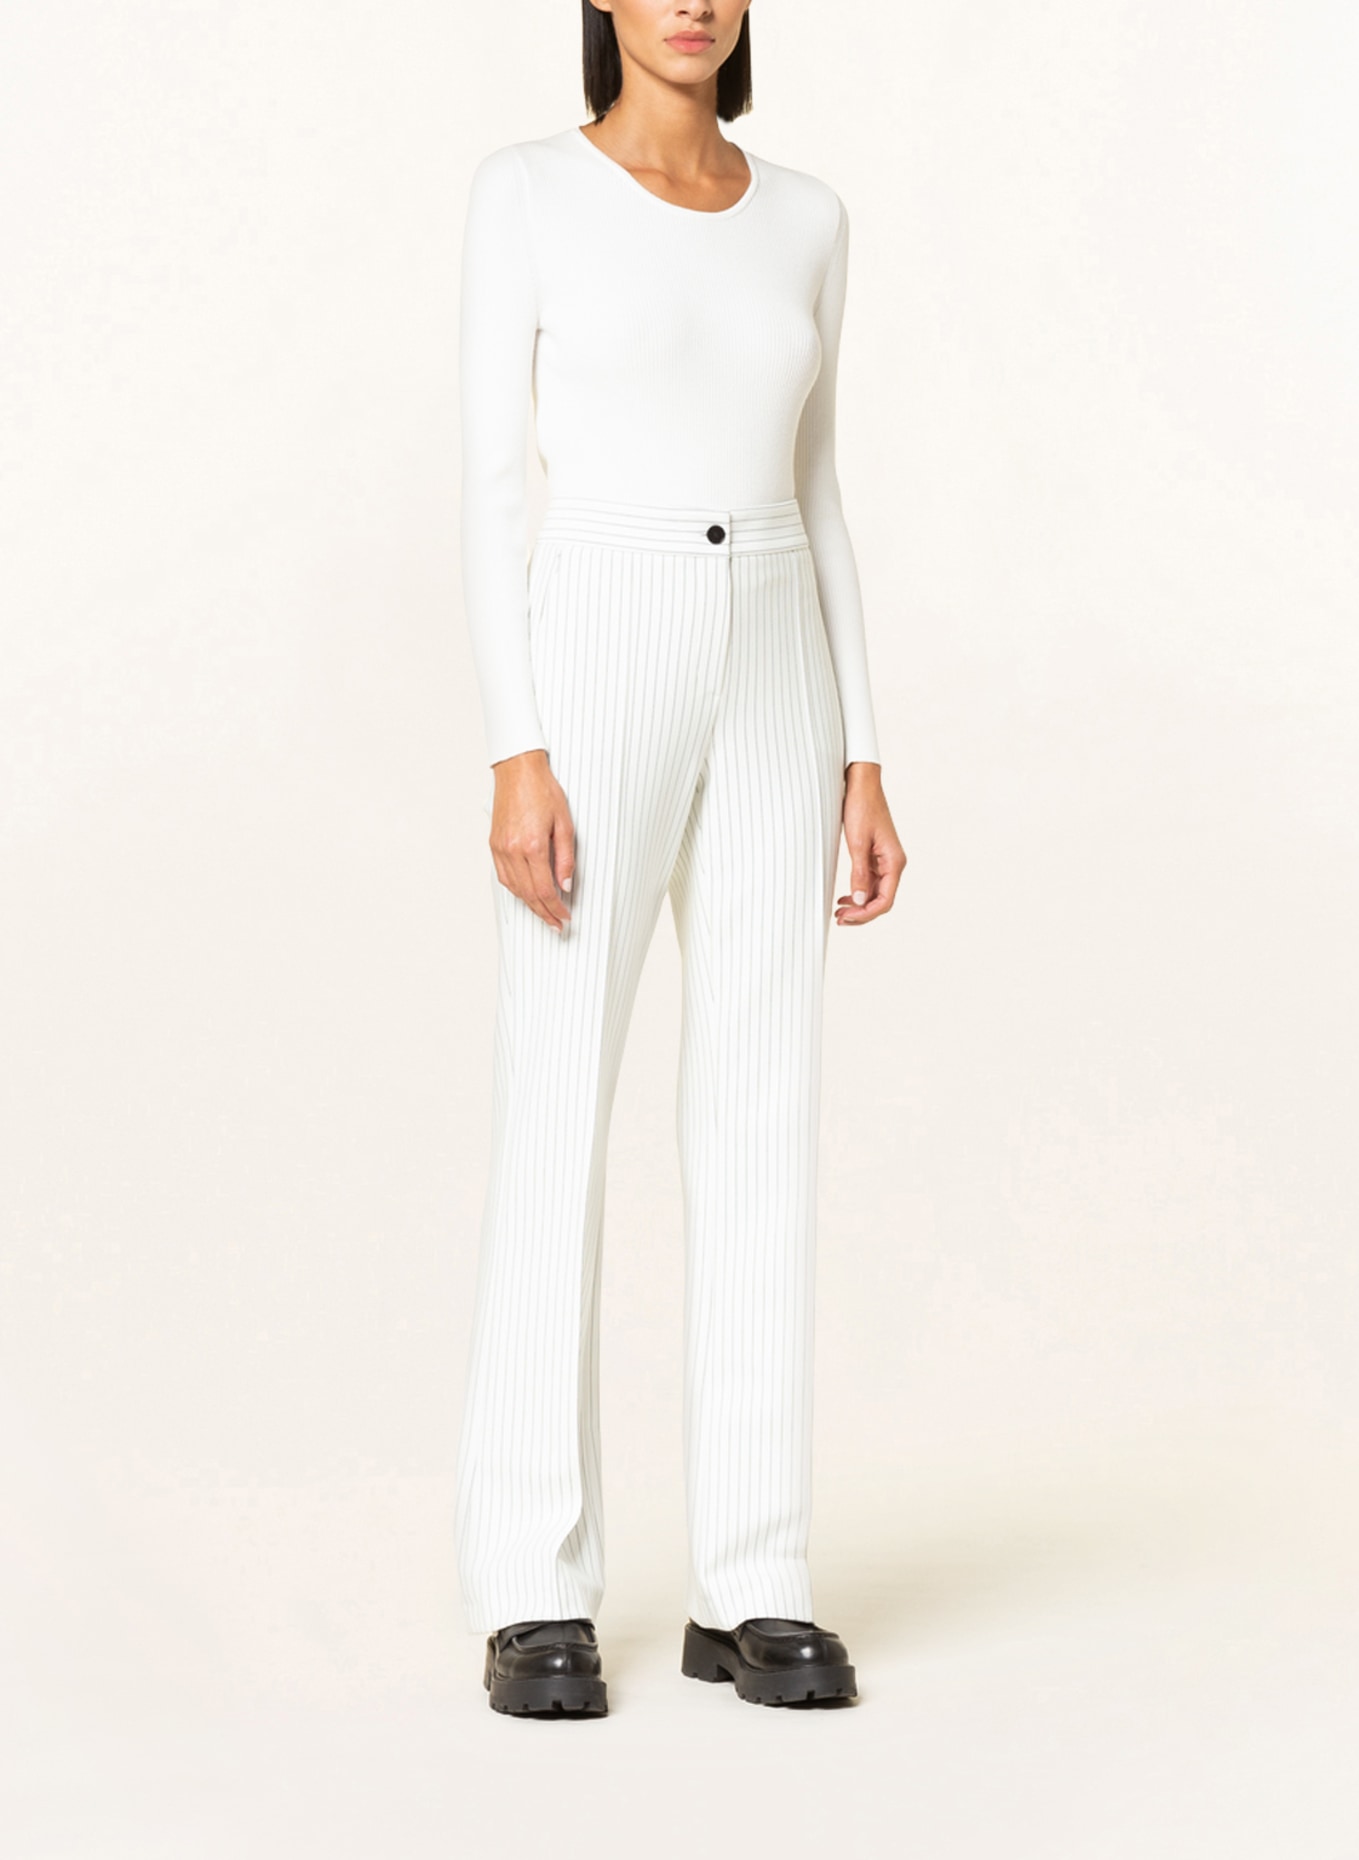 RIANI Sweater, Color: WHITE (Image 2)